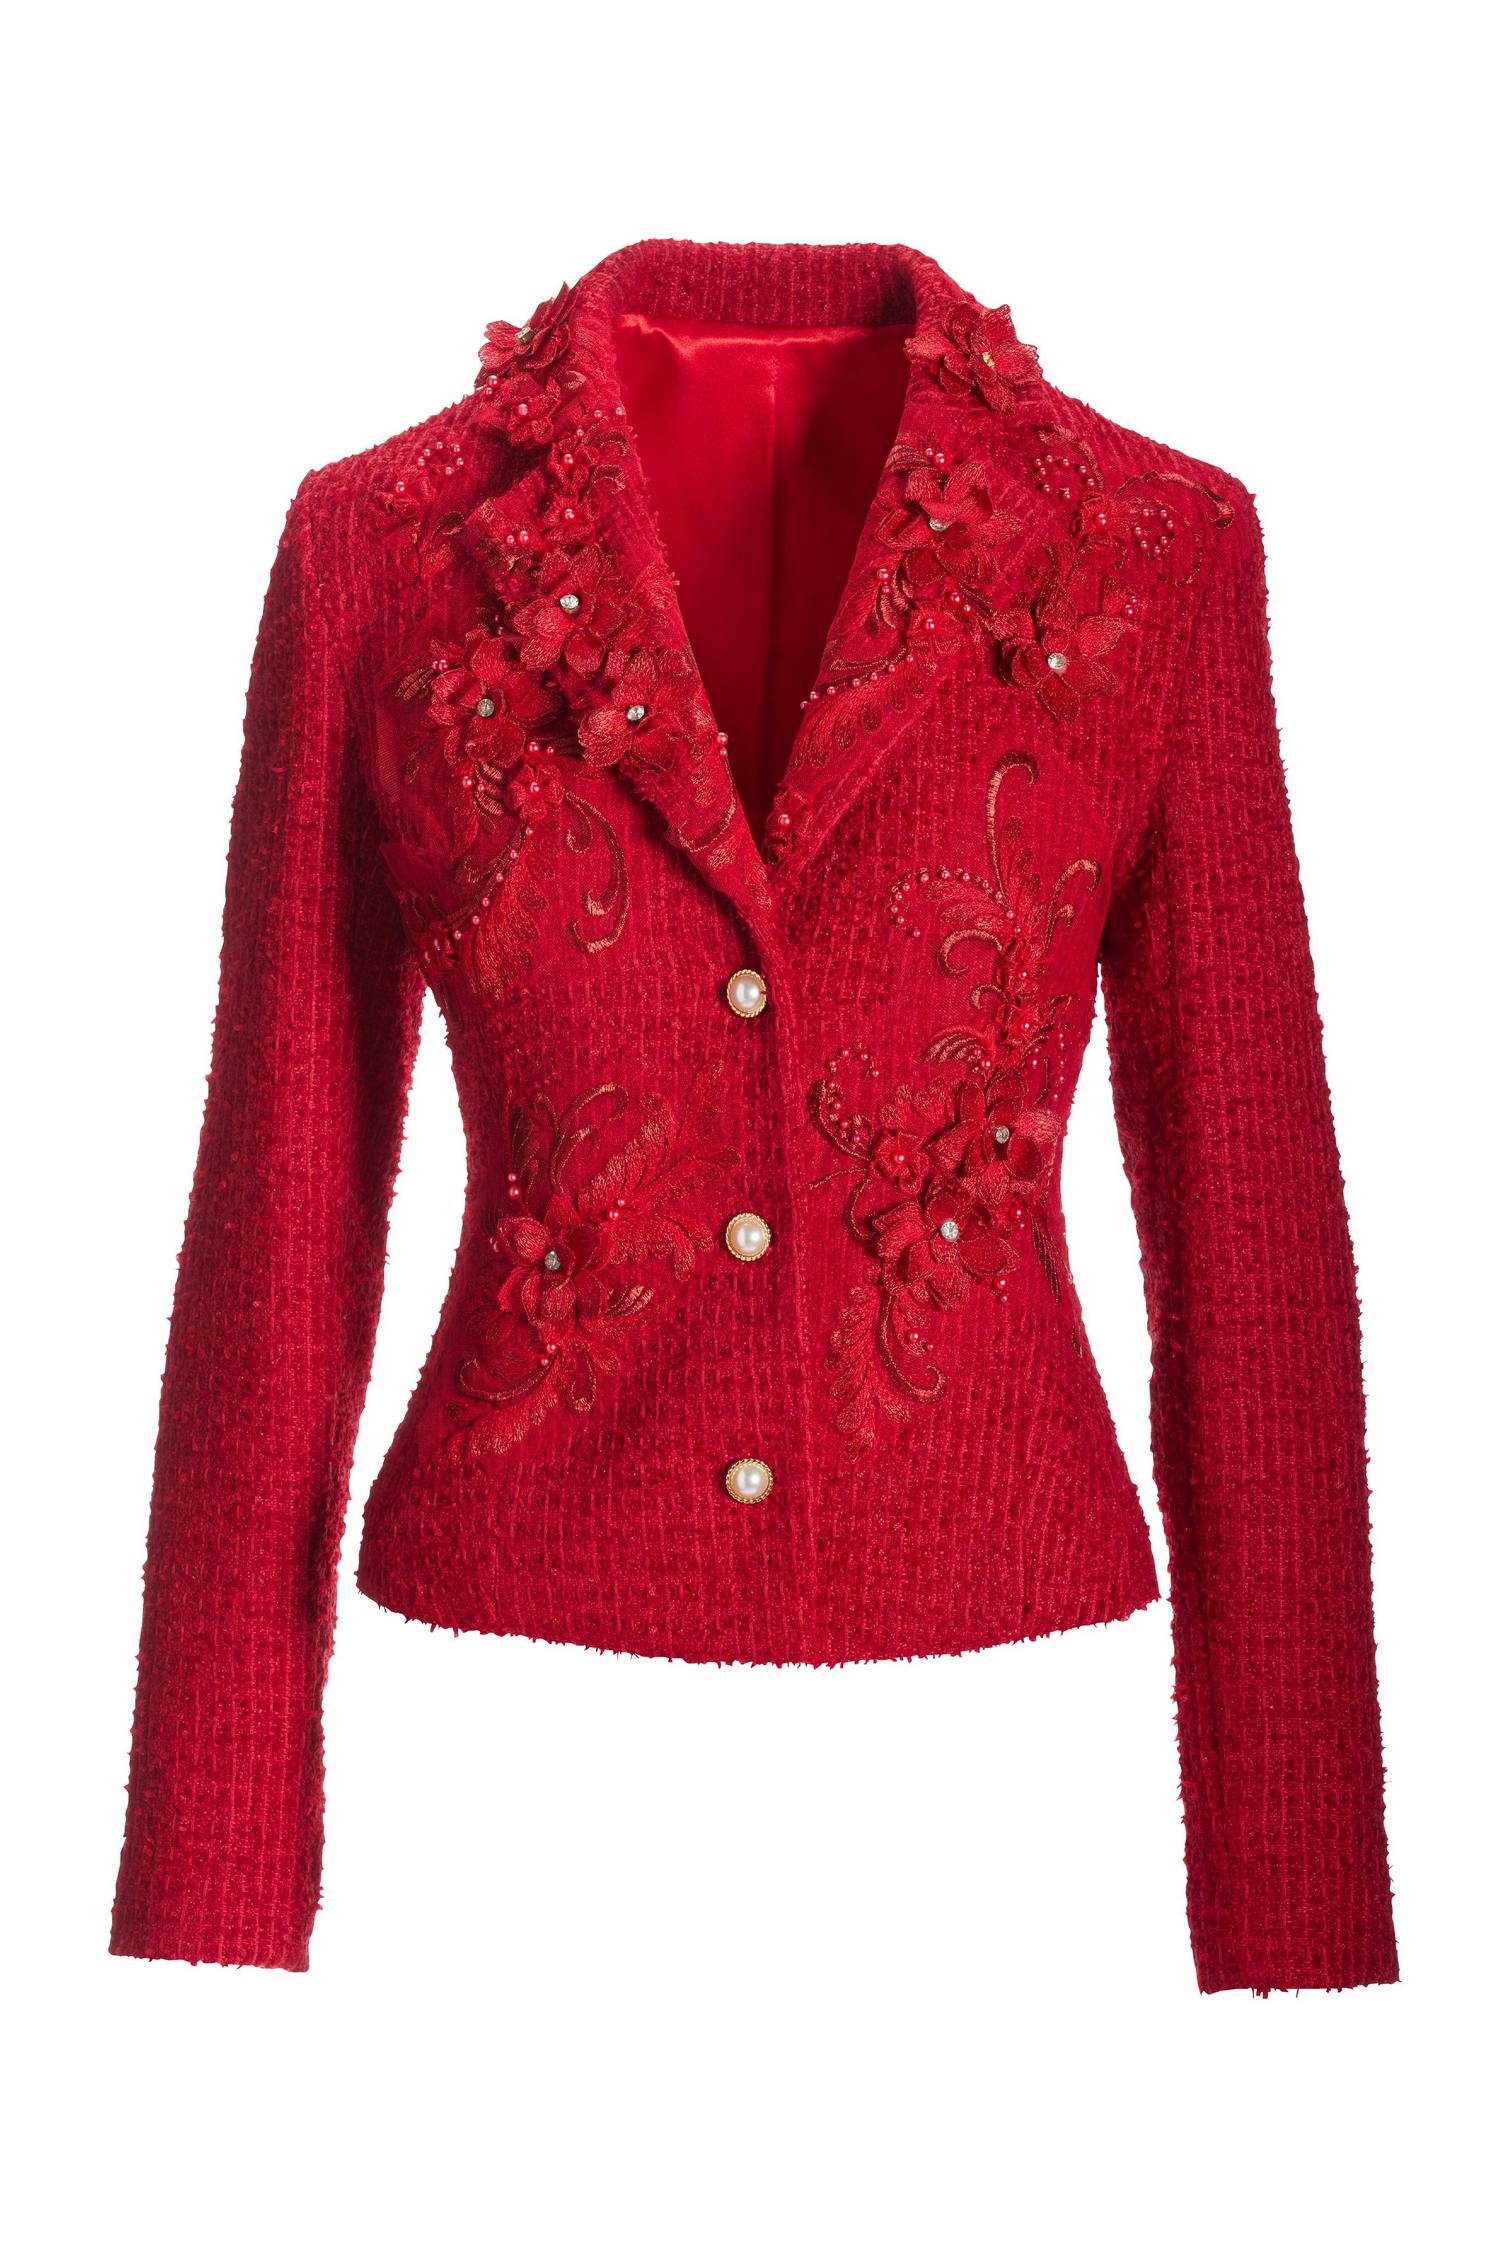 3D Floral Applique Tweed Jacket - Jester Red | Boston Proper